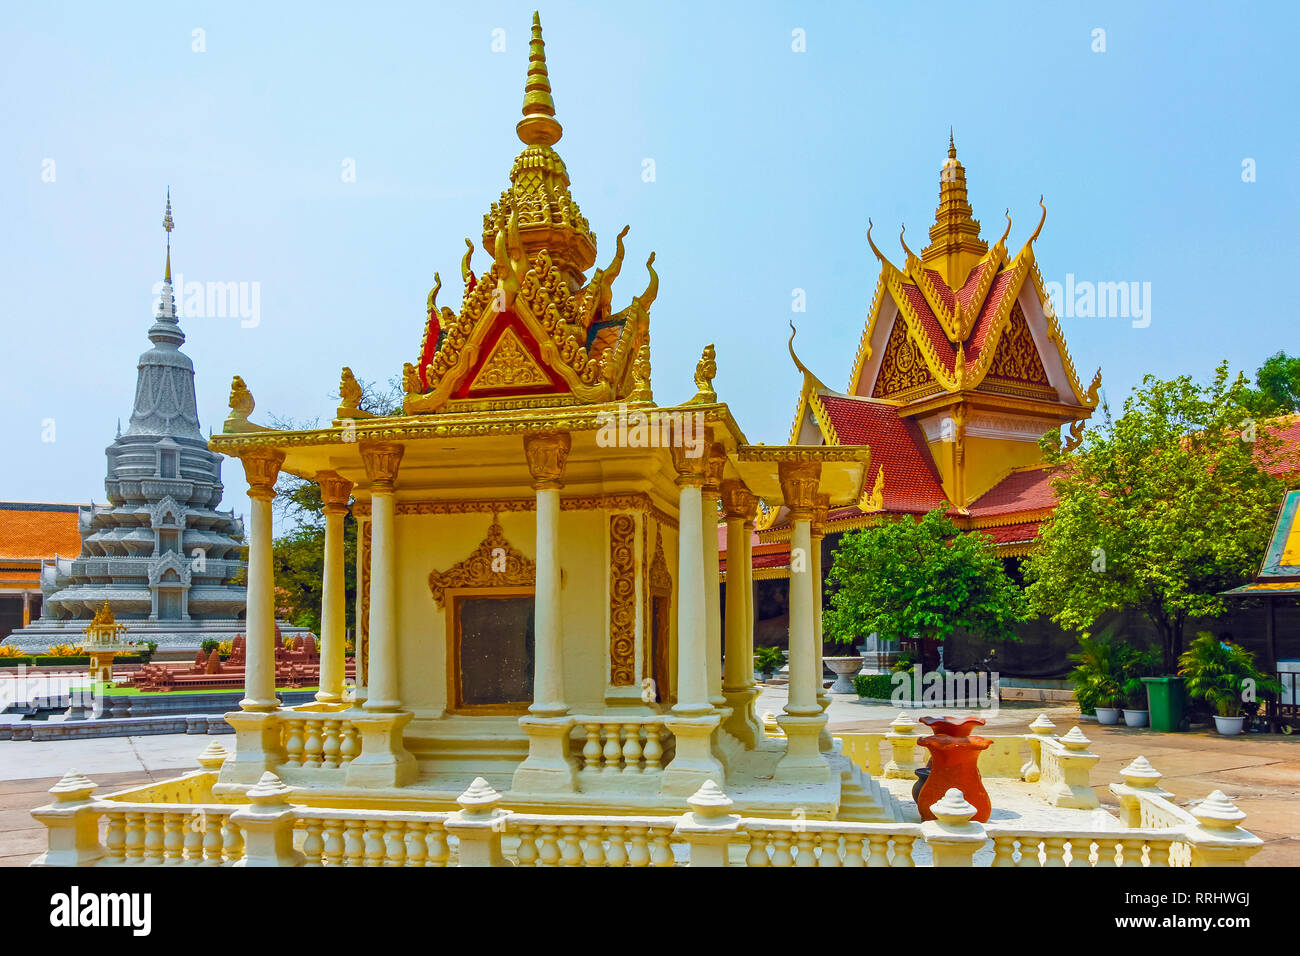 De miniature ornate building dans la Pagode d'argent du complexe du Palais Royal, le Palais Royal, centre-ville, Phnom Penh, Cambodge, Indochine Banque D'Images